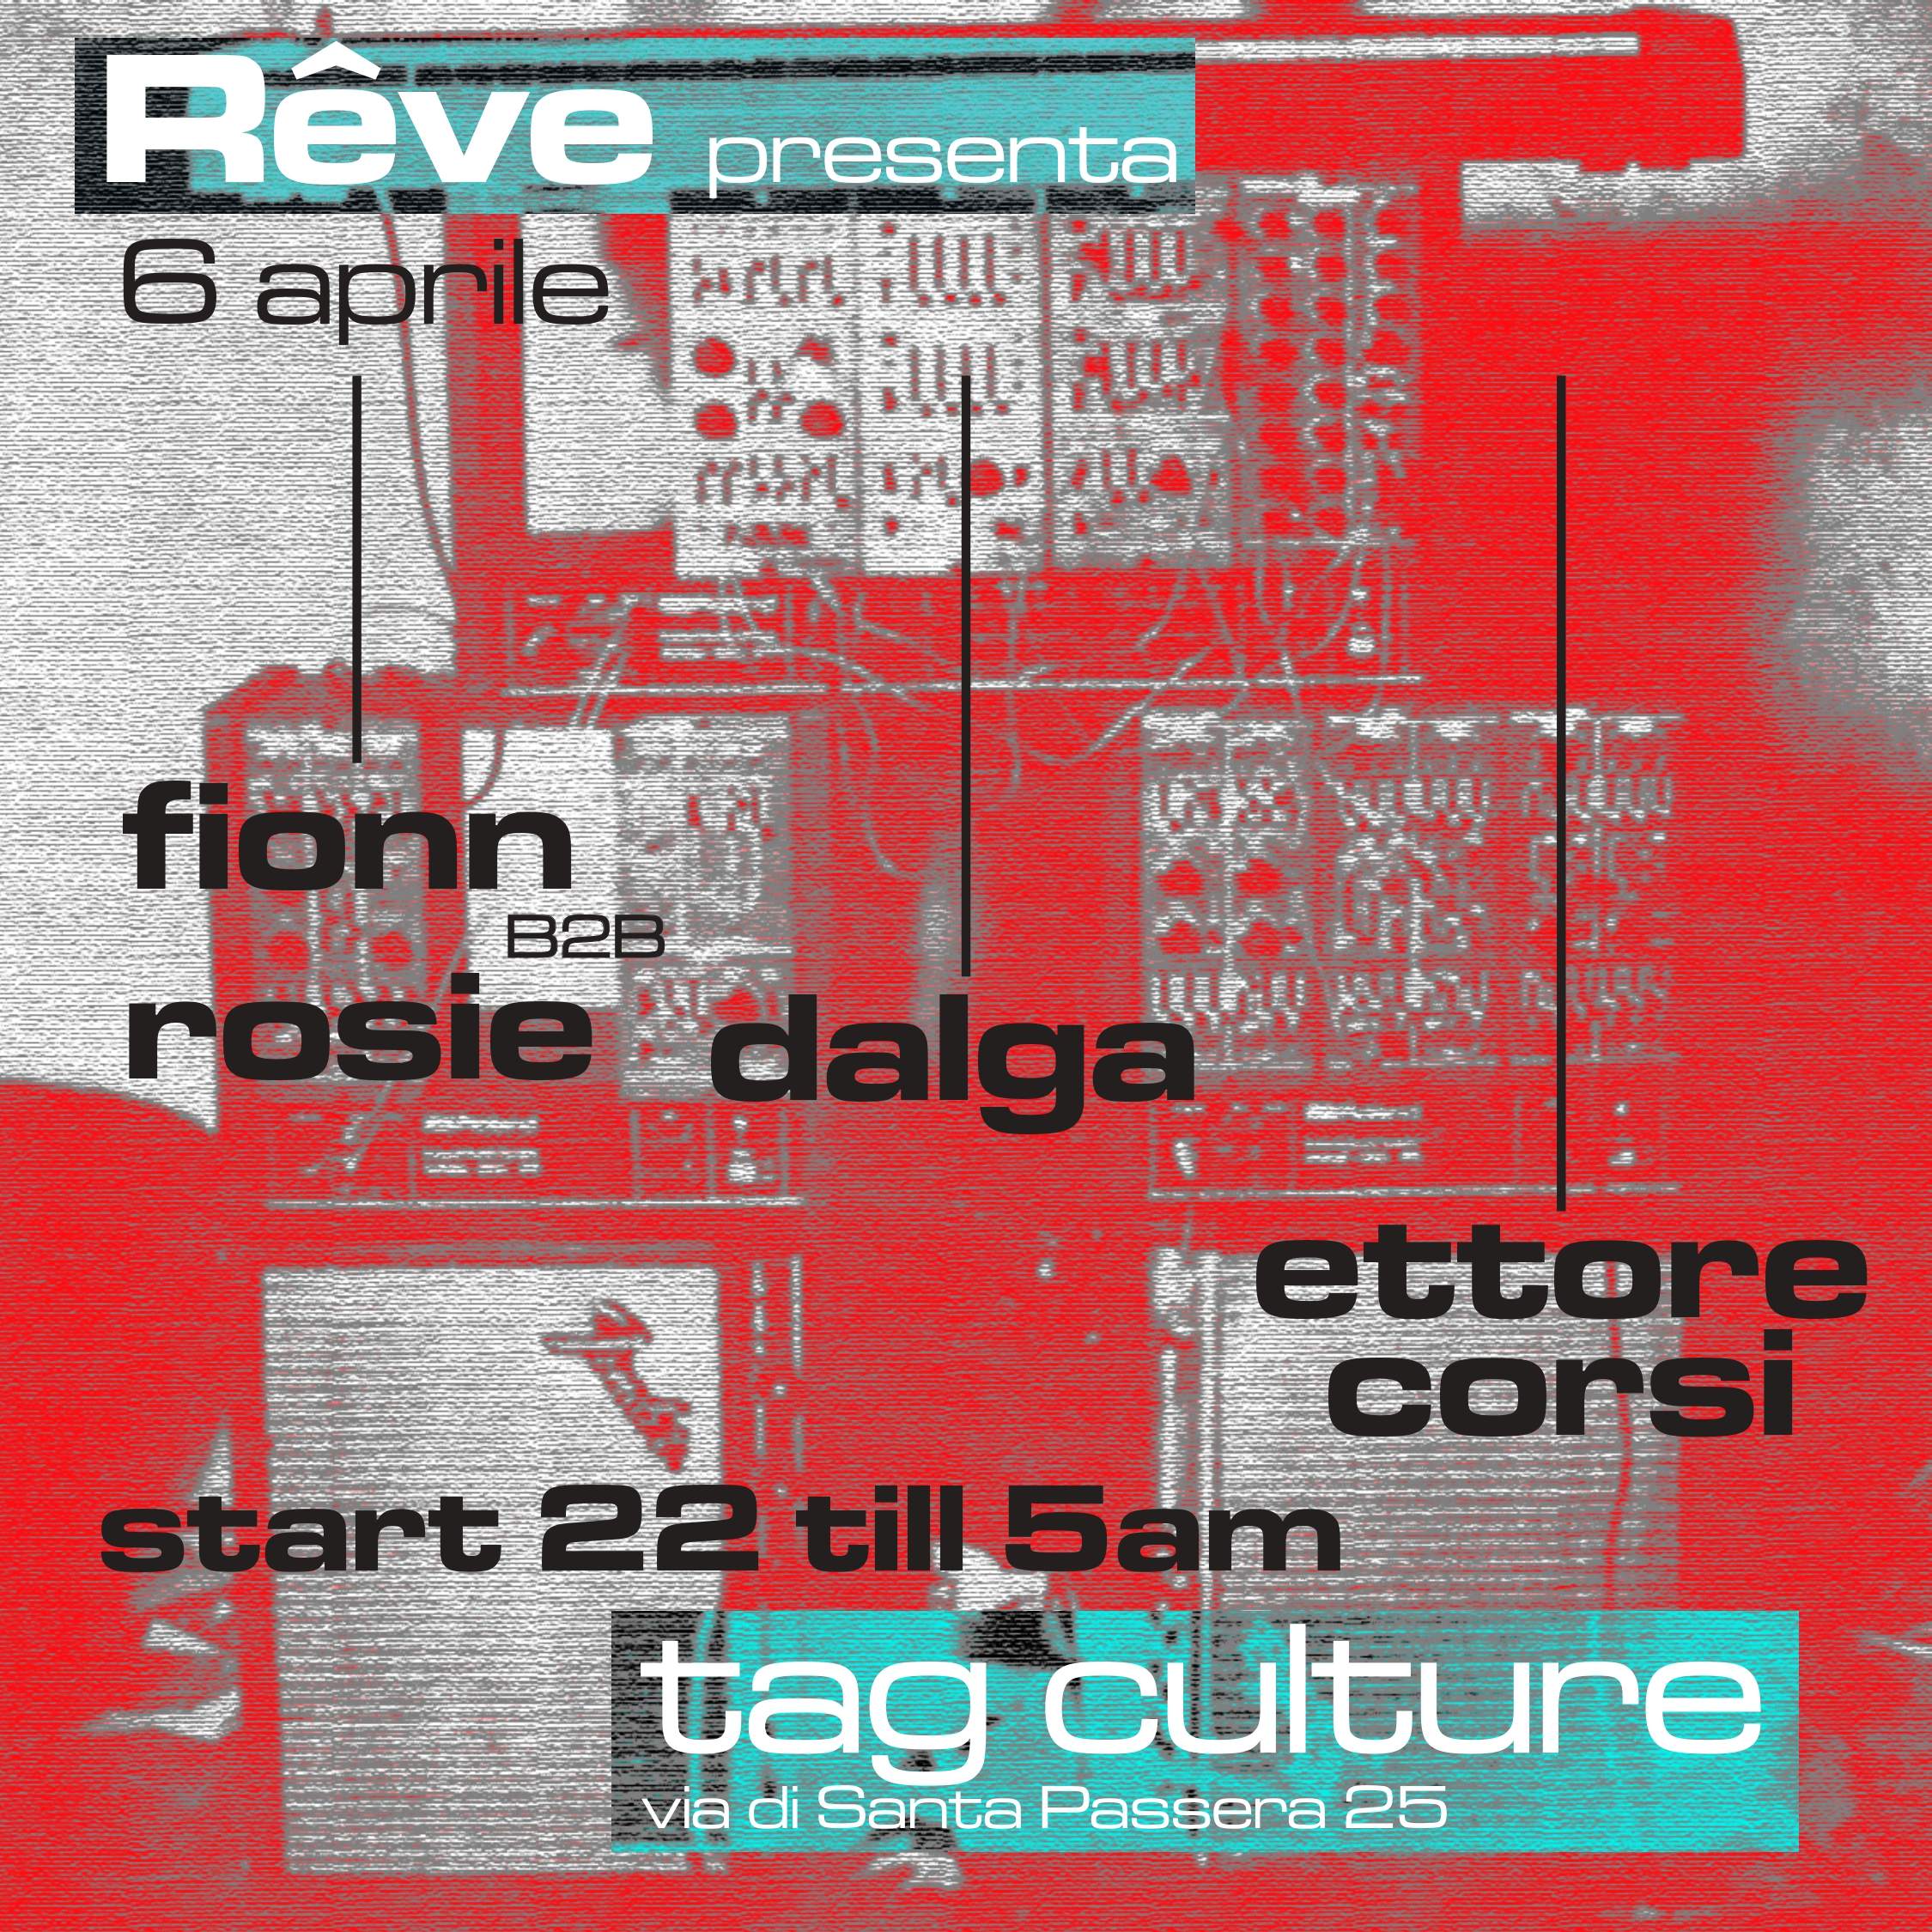 Rêve night at Tag Culture - Página frontal